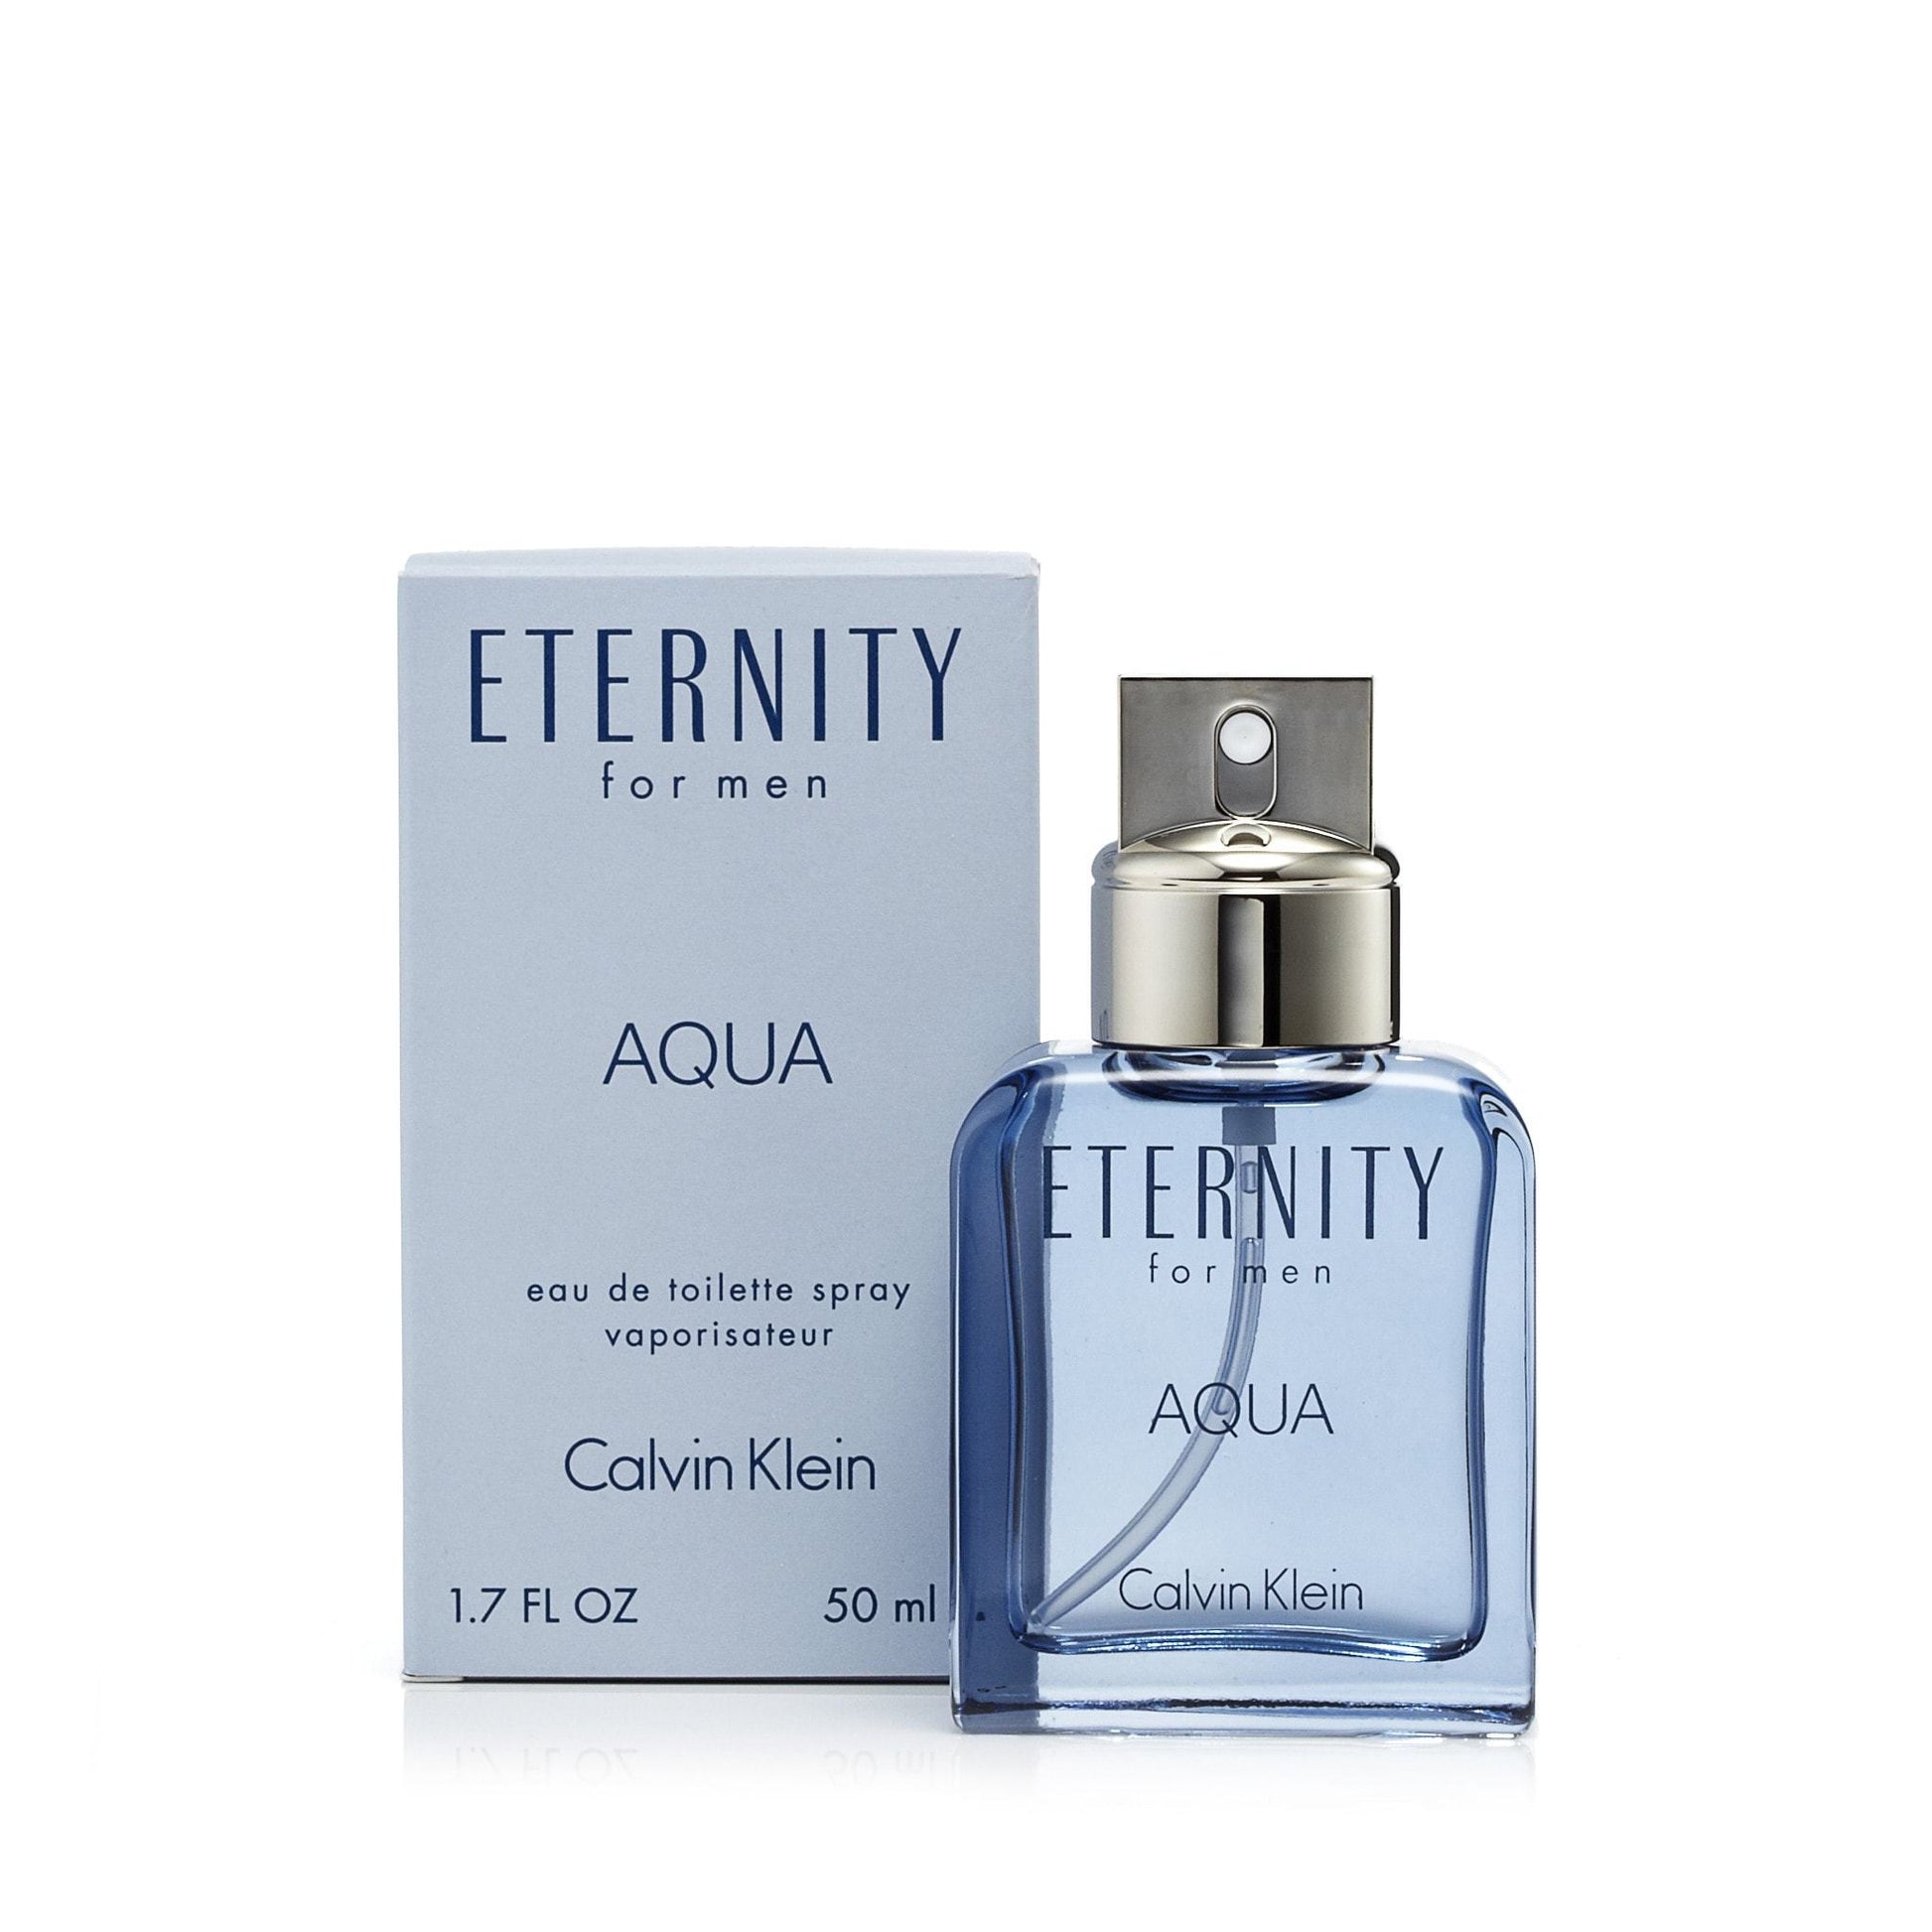 Eternity Aqua Eau de Toilette Spray for Men by Calvin Klein, Product image 7